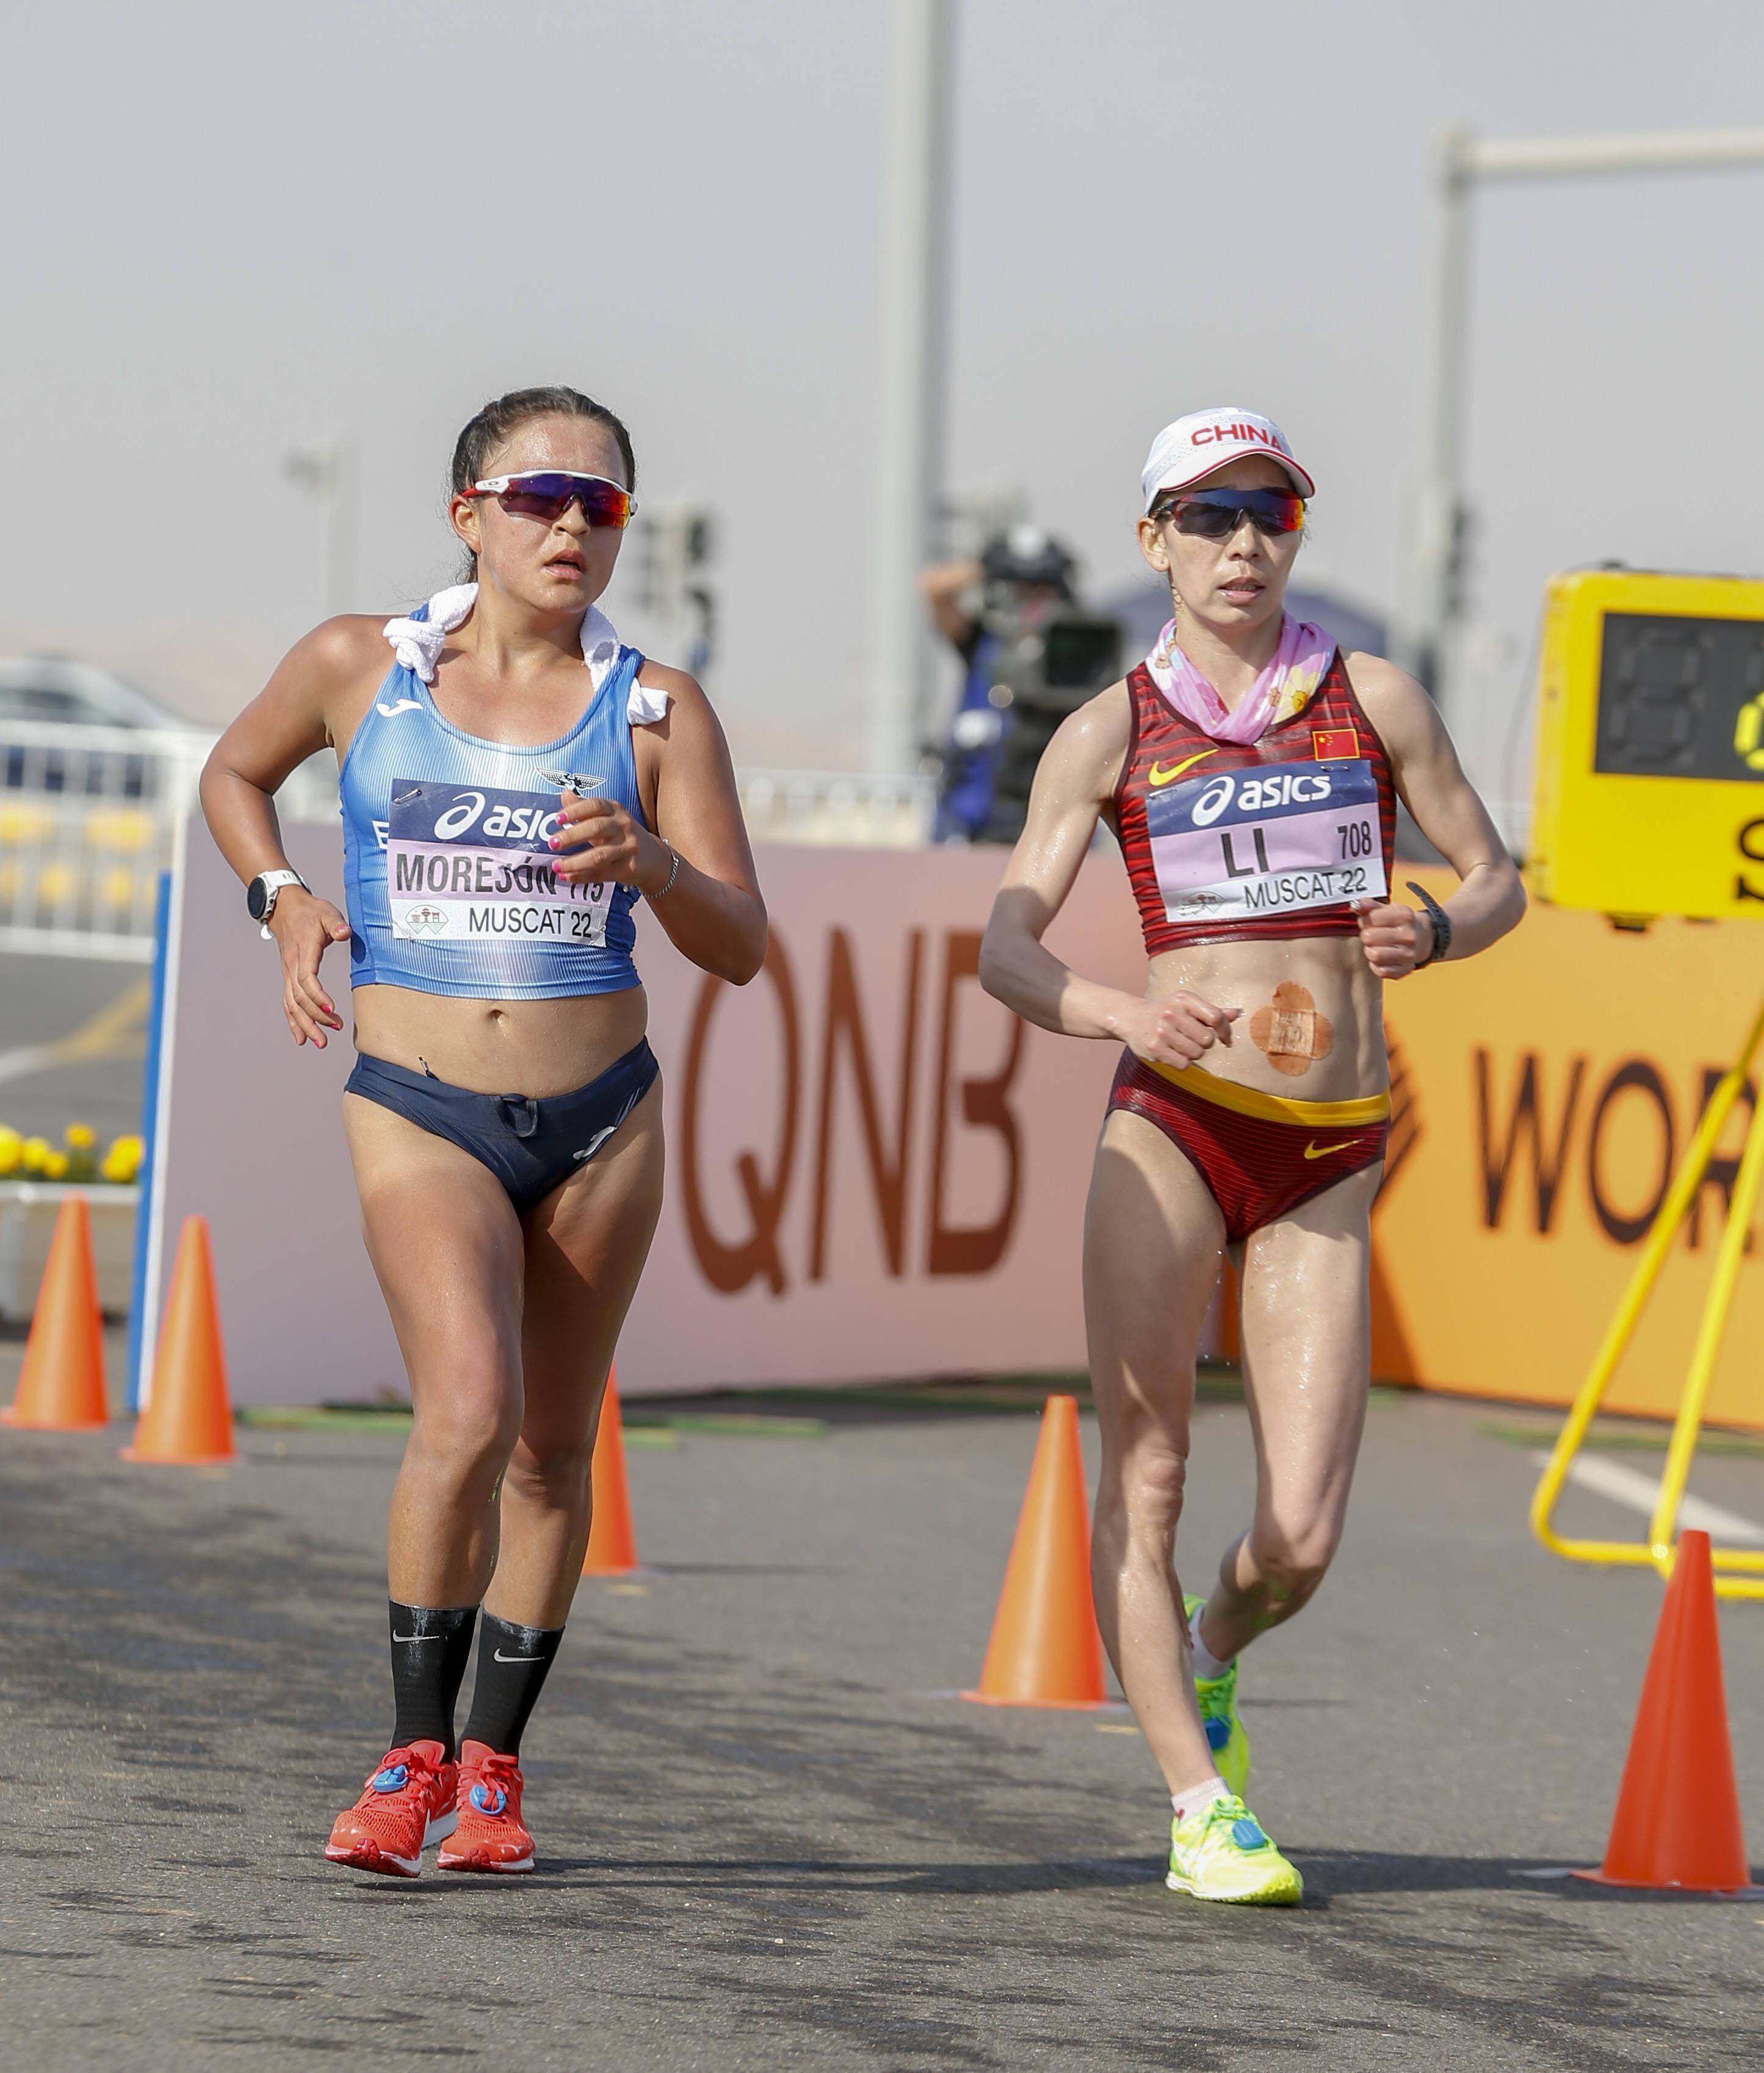 白雪莹|田径——世界竞走团体锦标赛：中国队获女子35公里团体季军